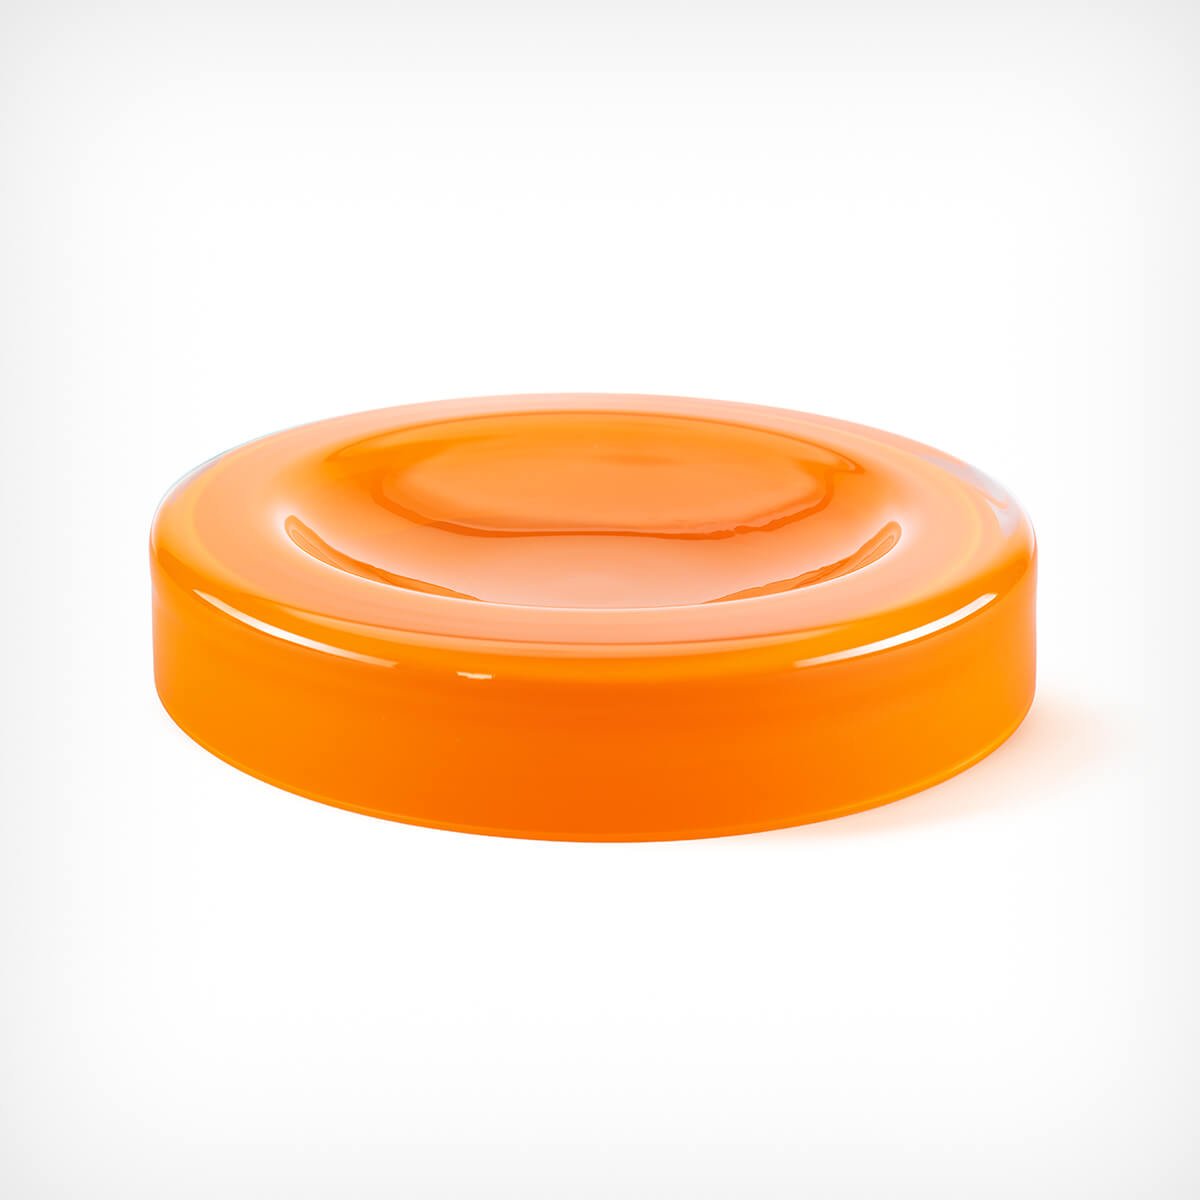 Schale „WET Bowl” Orange groß Ursula Futura – diesellerie.com